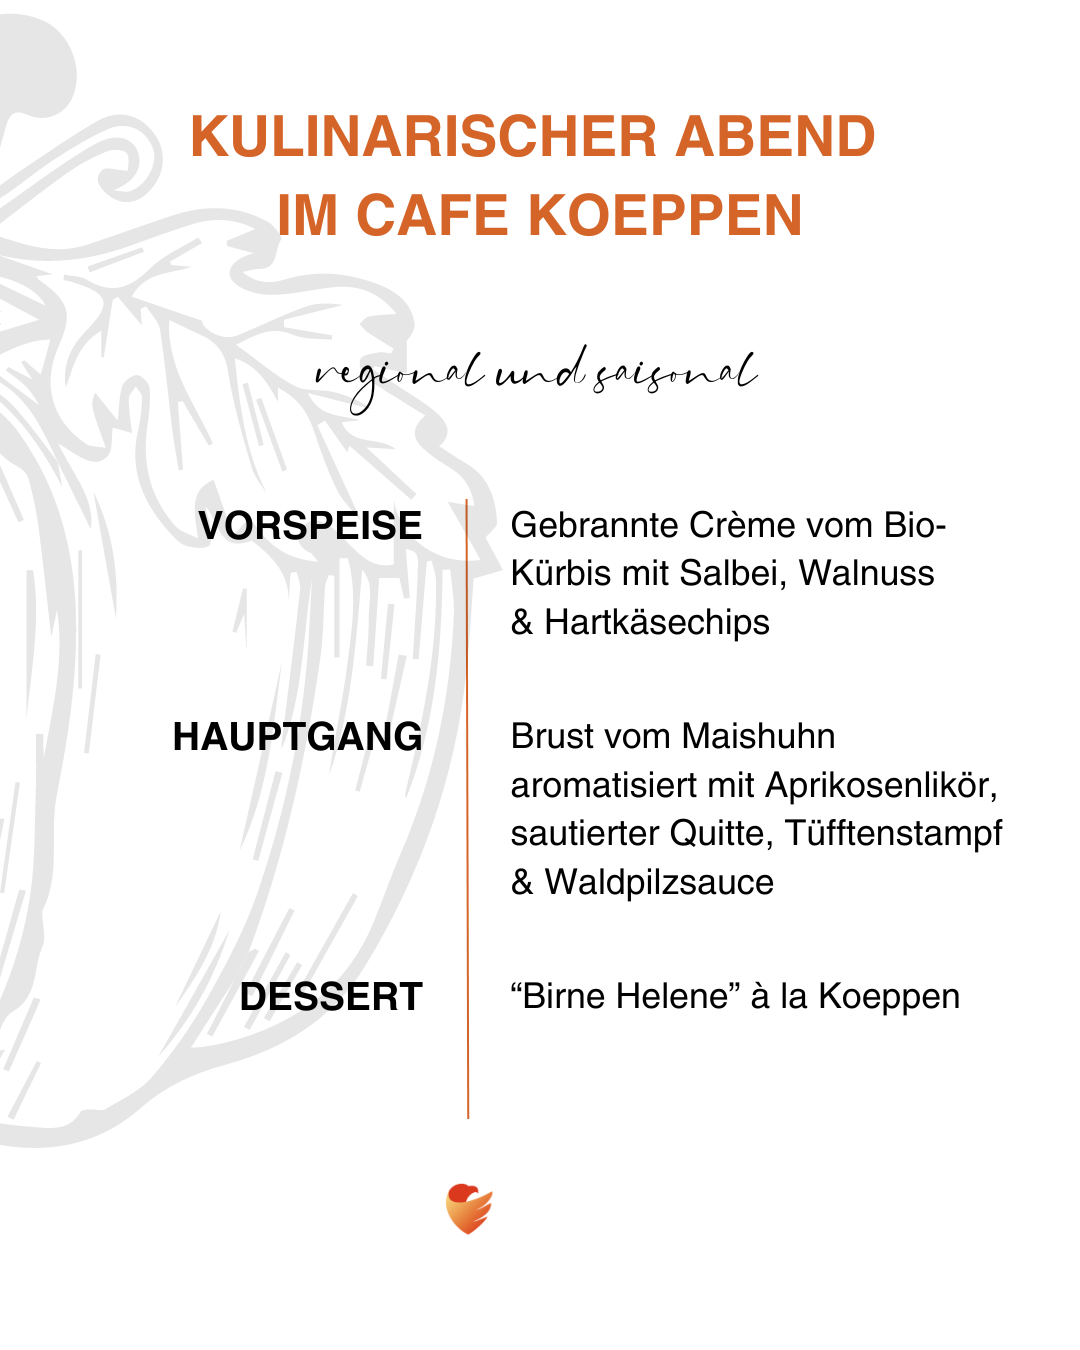 Kulinarischer Abend im Café Koeppen | Oktober